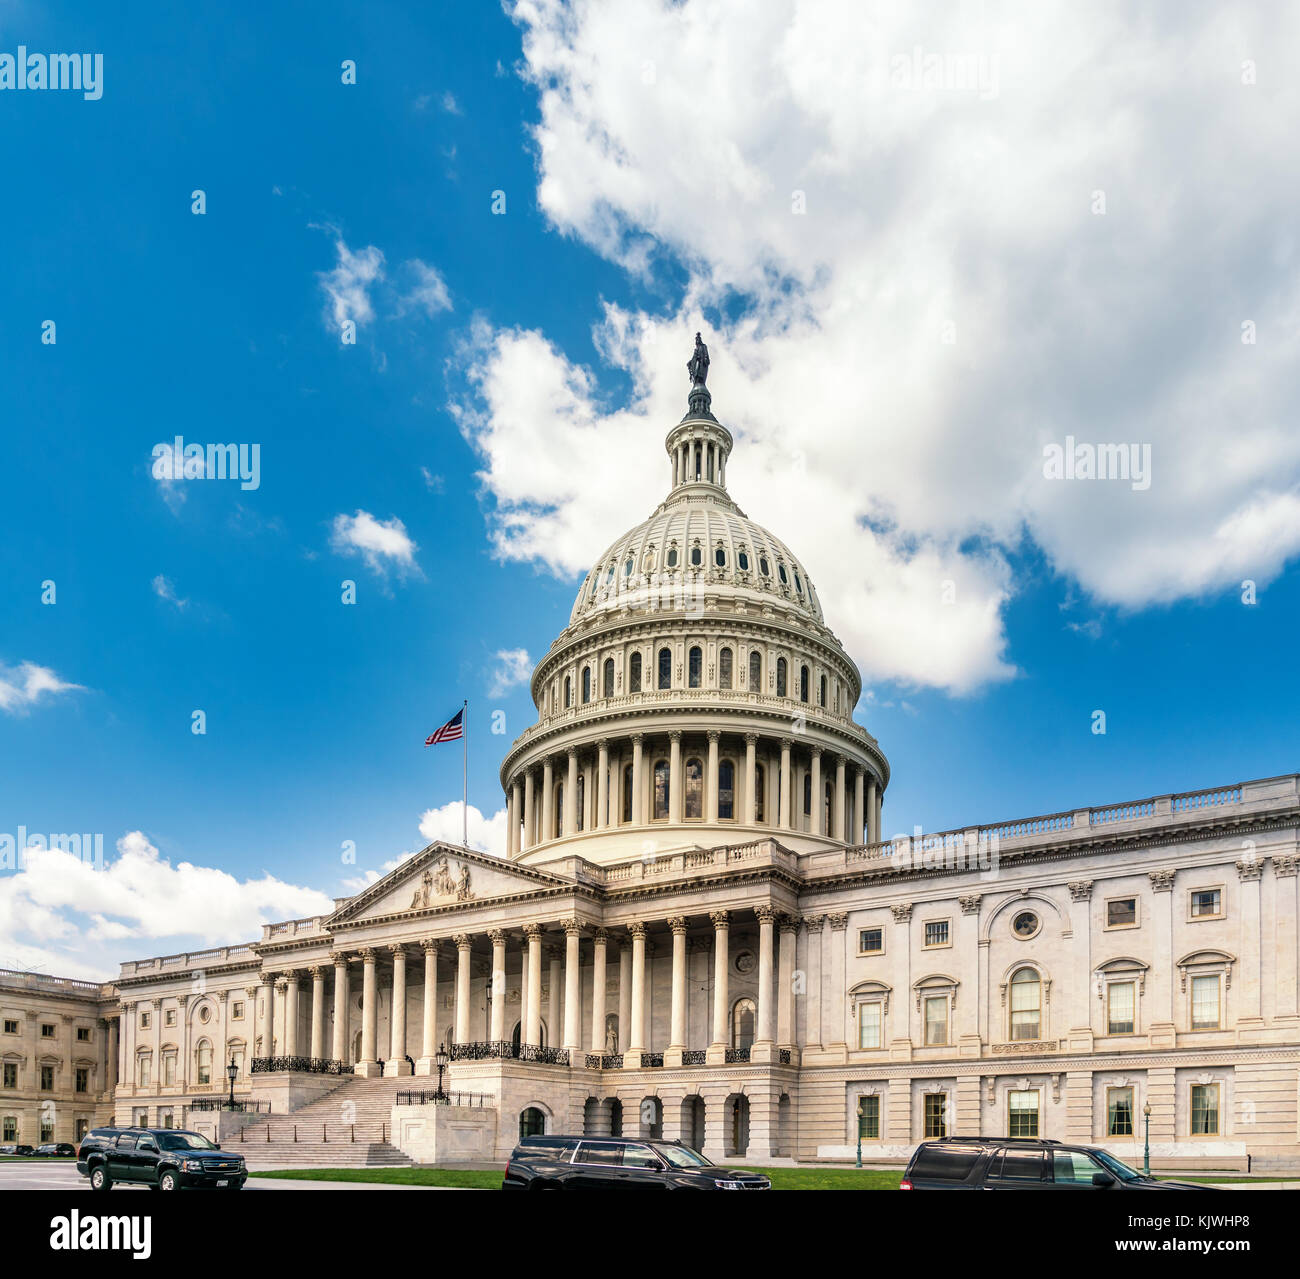 El edificio del Capitolio de los Estados Unidos en Washington DC - la fachada oriental de la famosa us landmark. Foto de stock